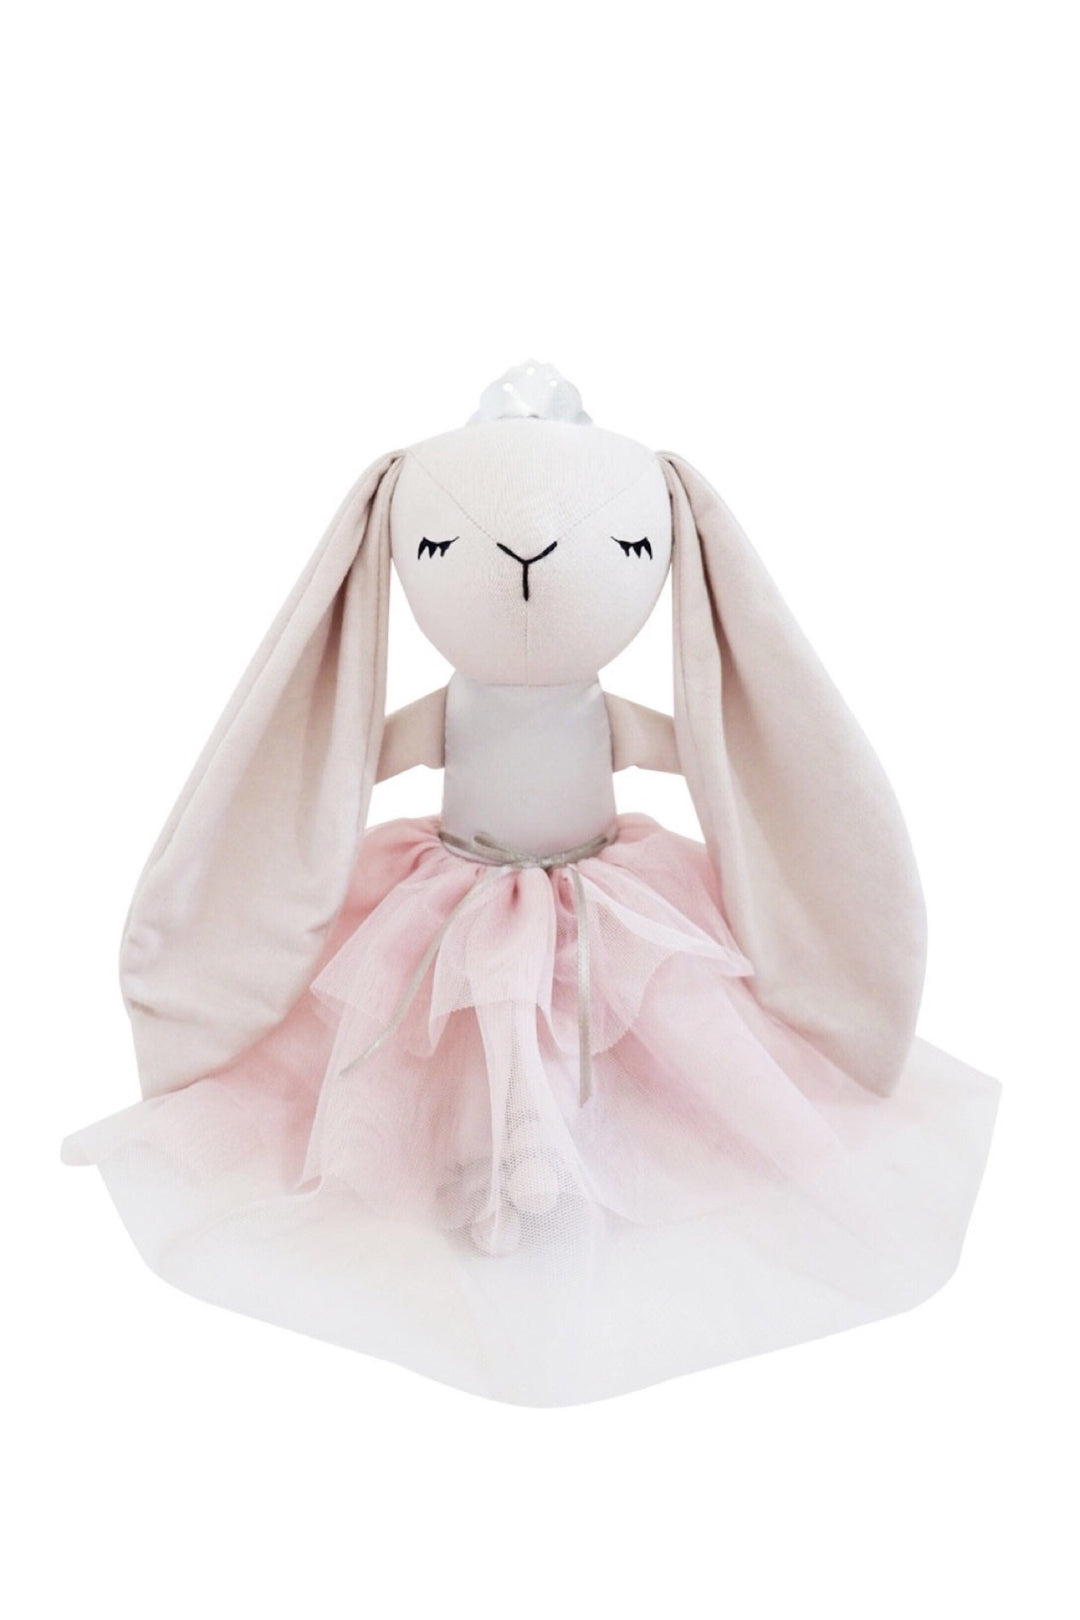 Bunny Princess Pale Rose, Toy, Spinkie - 3LittlePicks